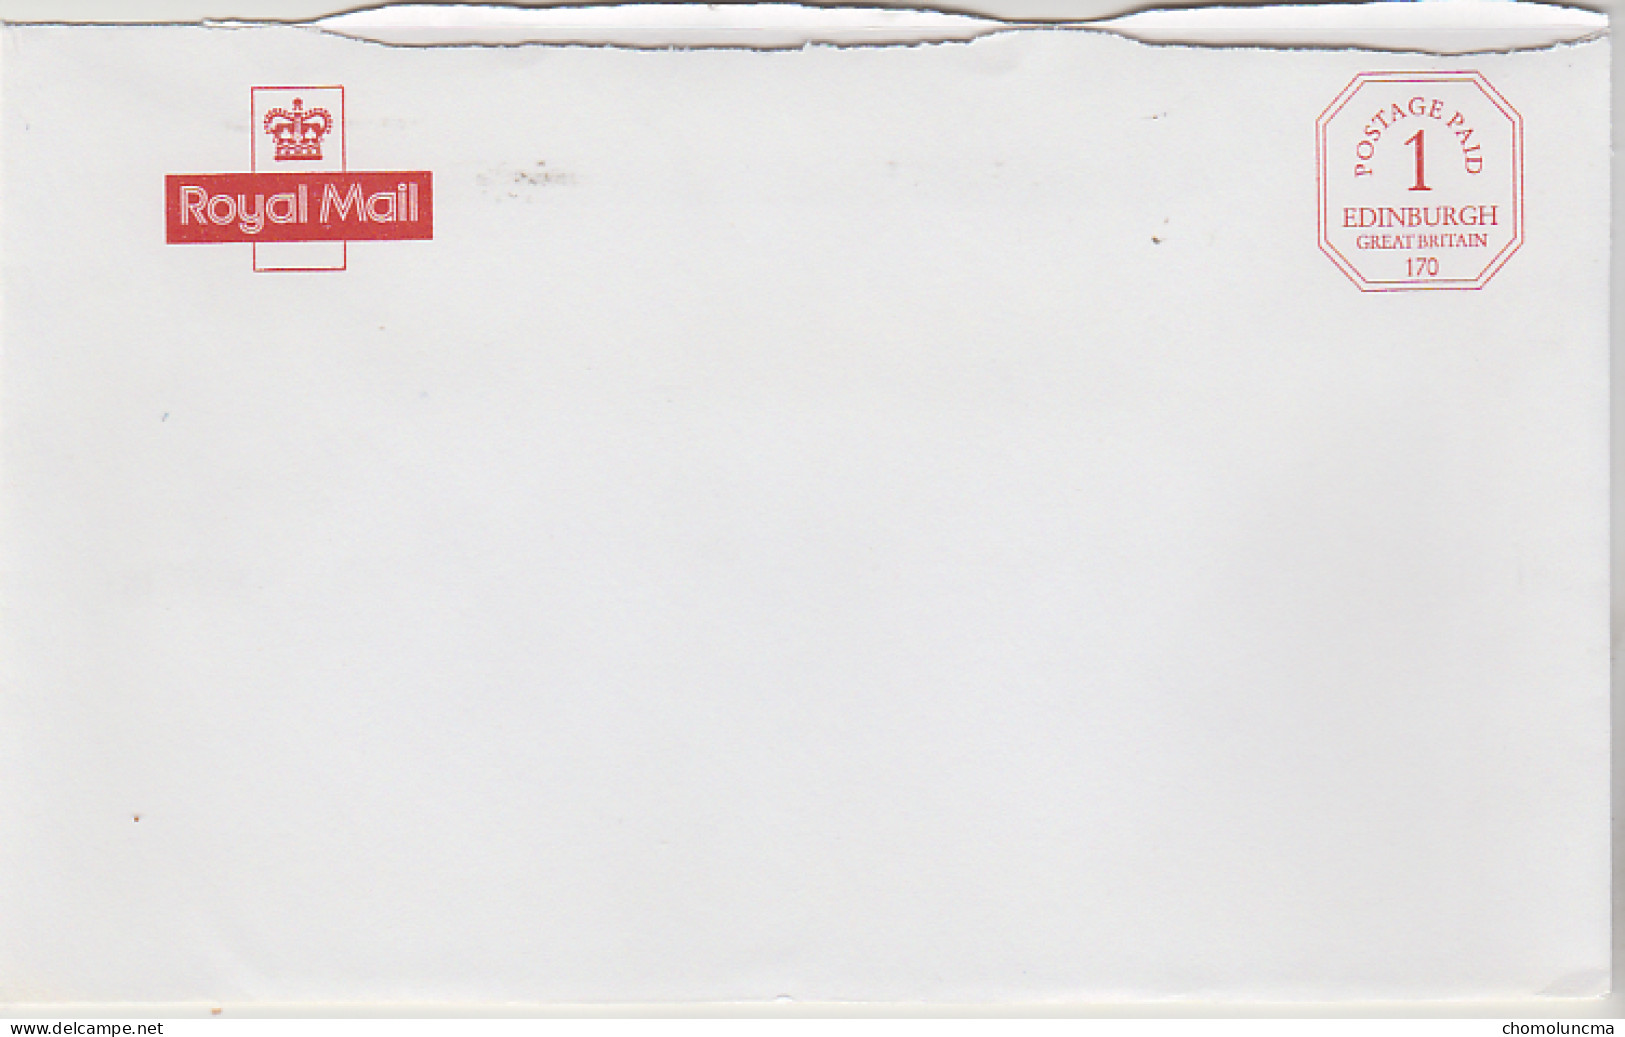 Royal Mail Cancel Postage Paid Edinburgh Printed In Red Port Payé Du Service Philatélique De Grande Bretagne - Service